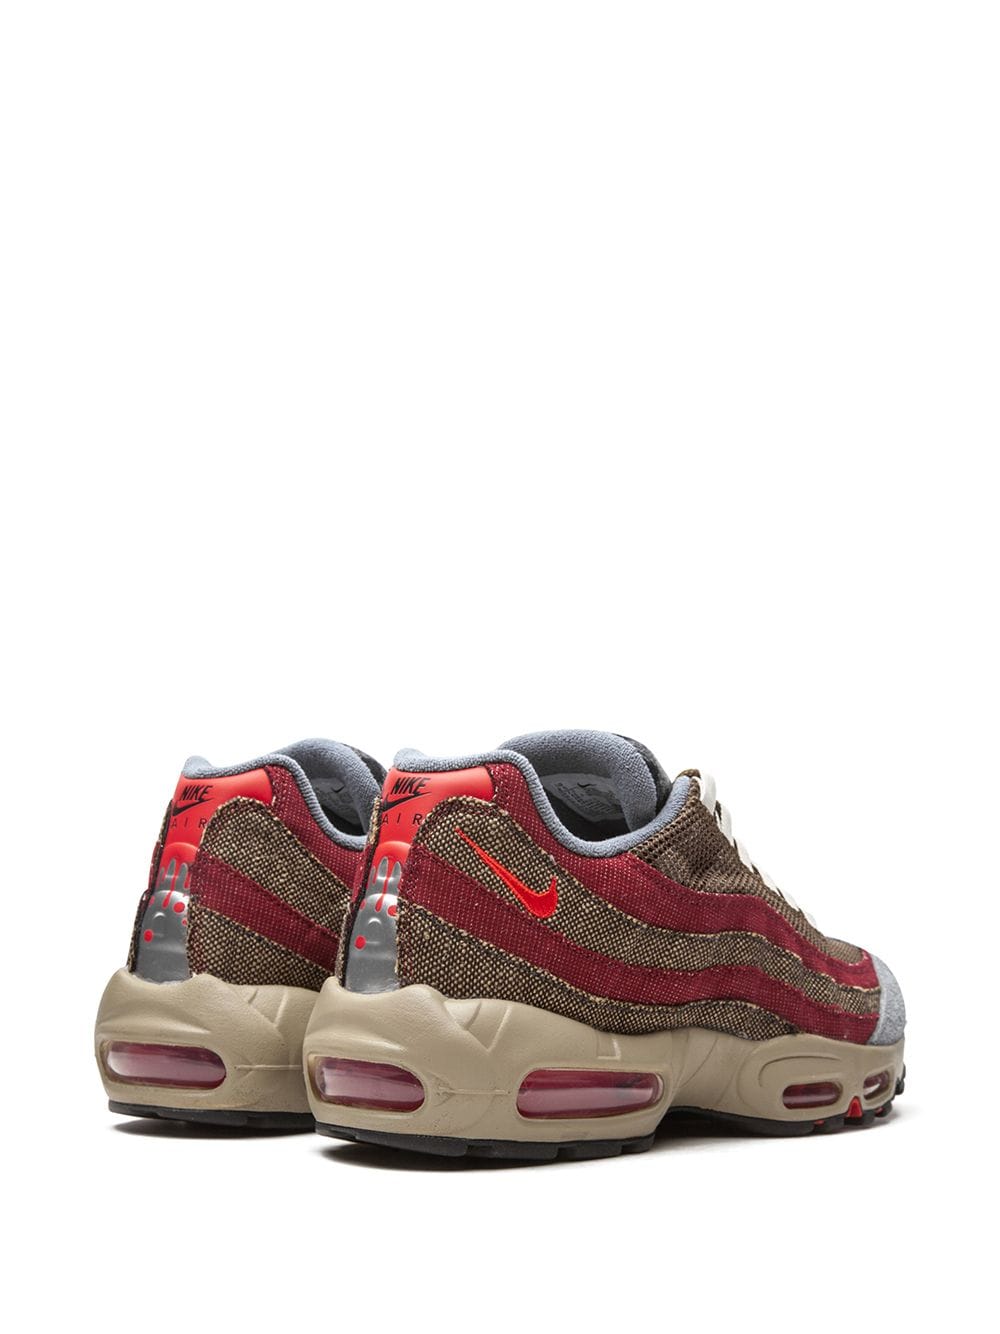 Shop Nike Air Max 95 "freddy Krueger" Sneakers In Red